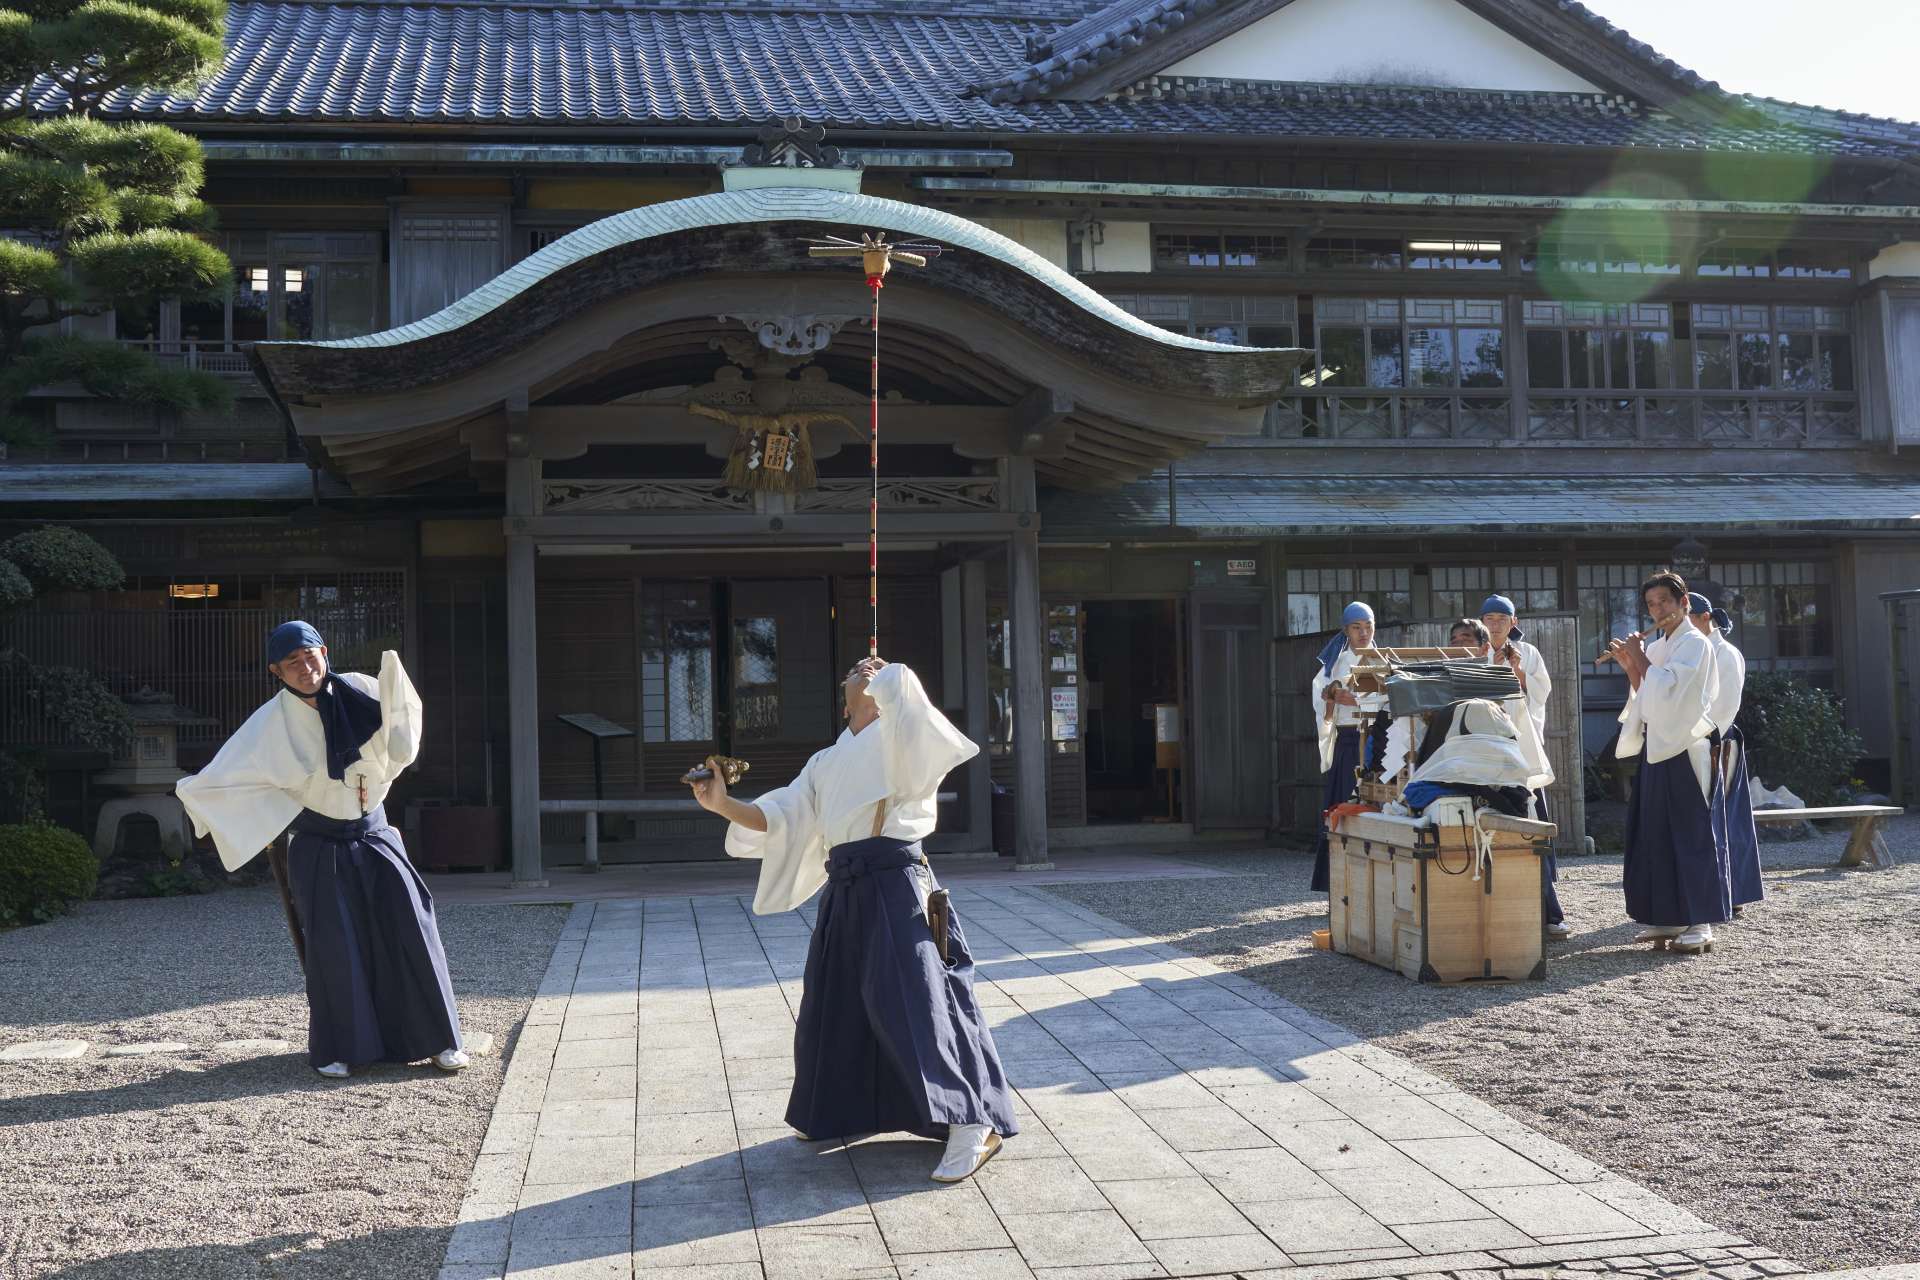 お伊勢参りの娯楽芸能を、日本各地への巡業で披露する伊勢大神楽